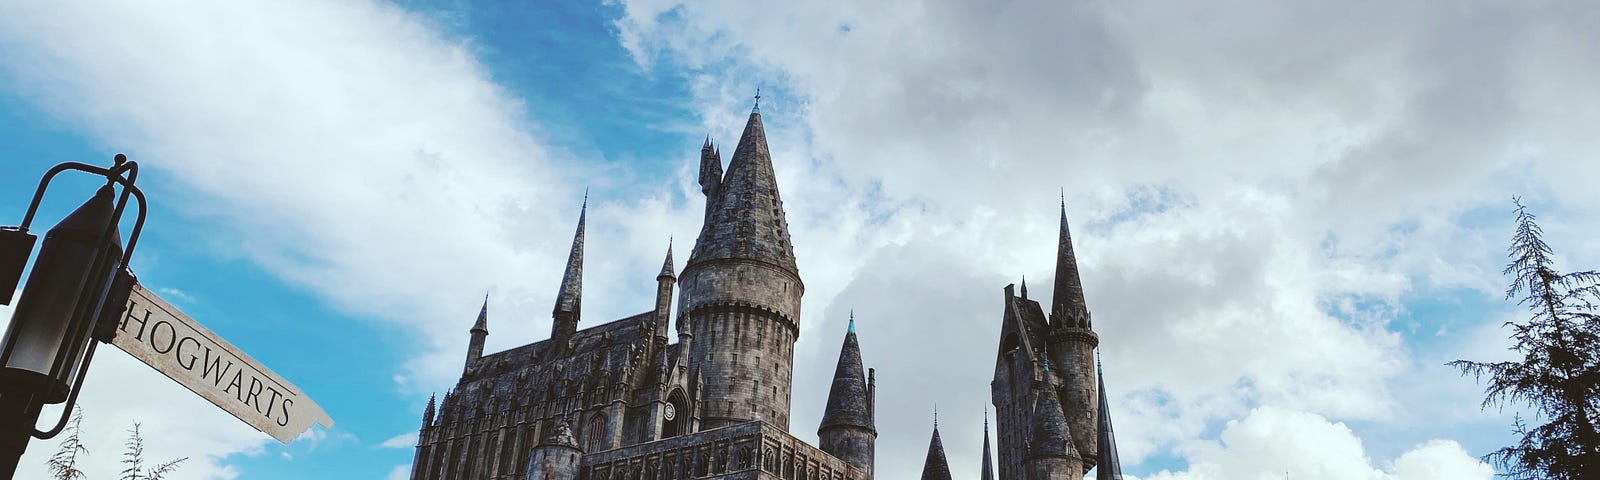 Castle at Hogwarts